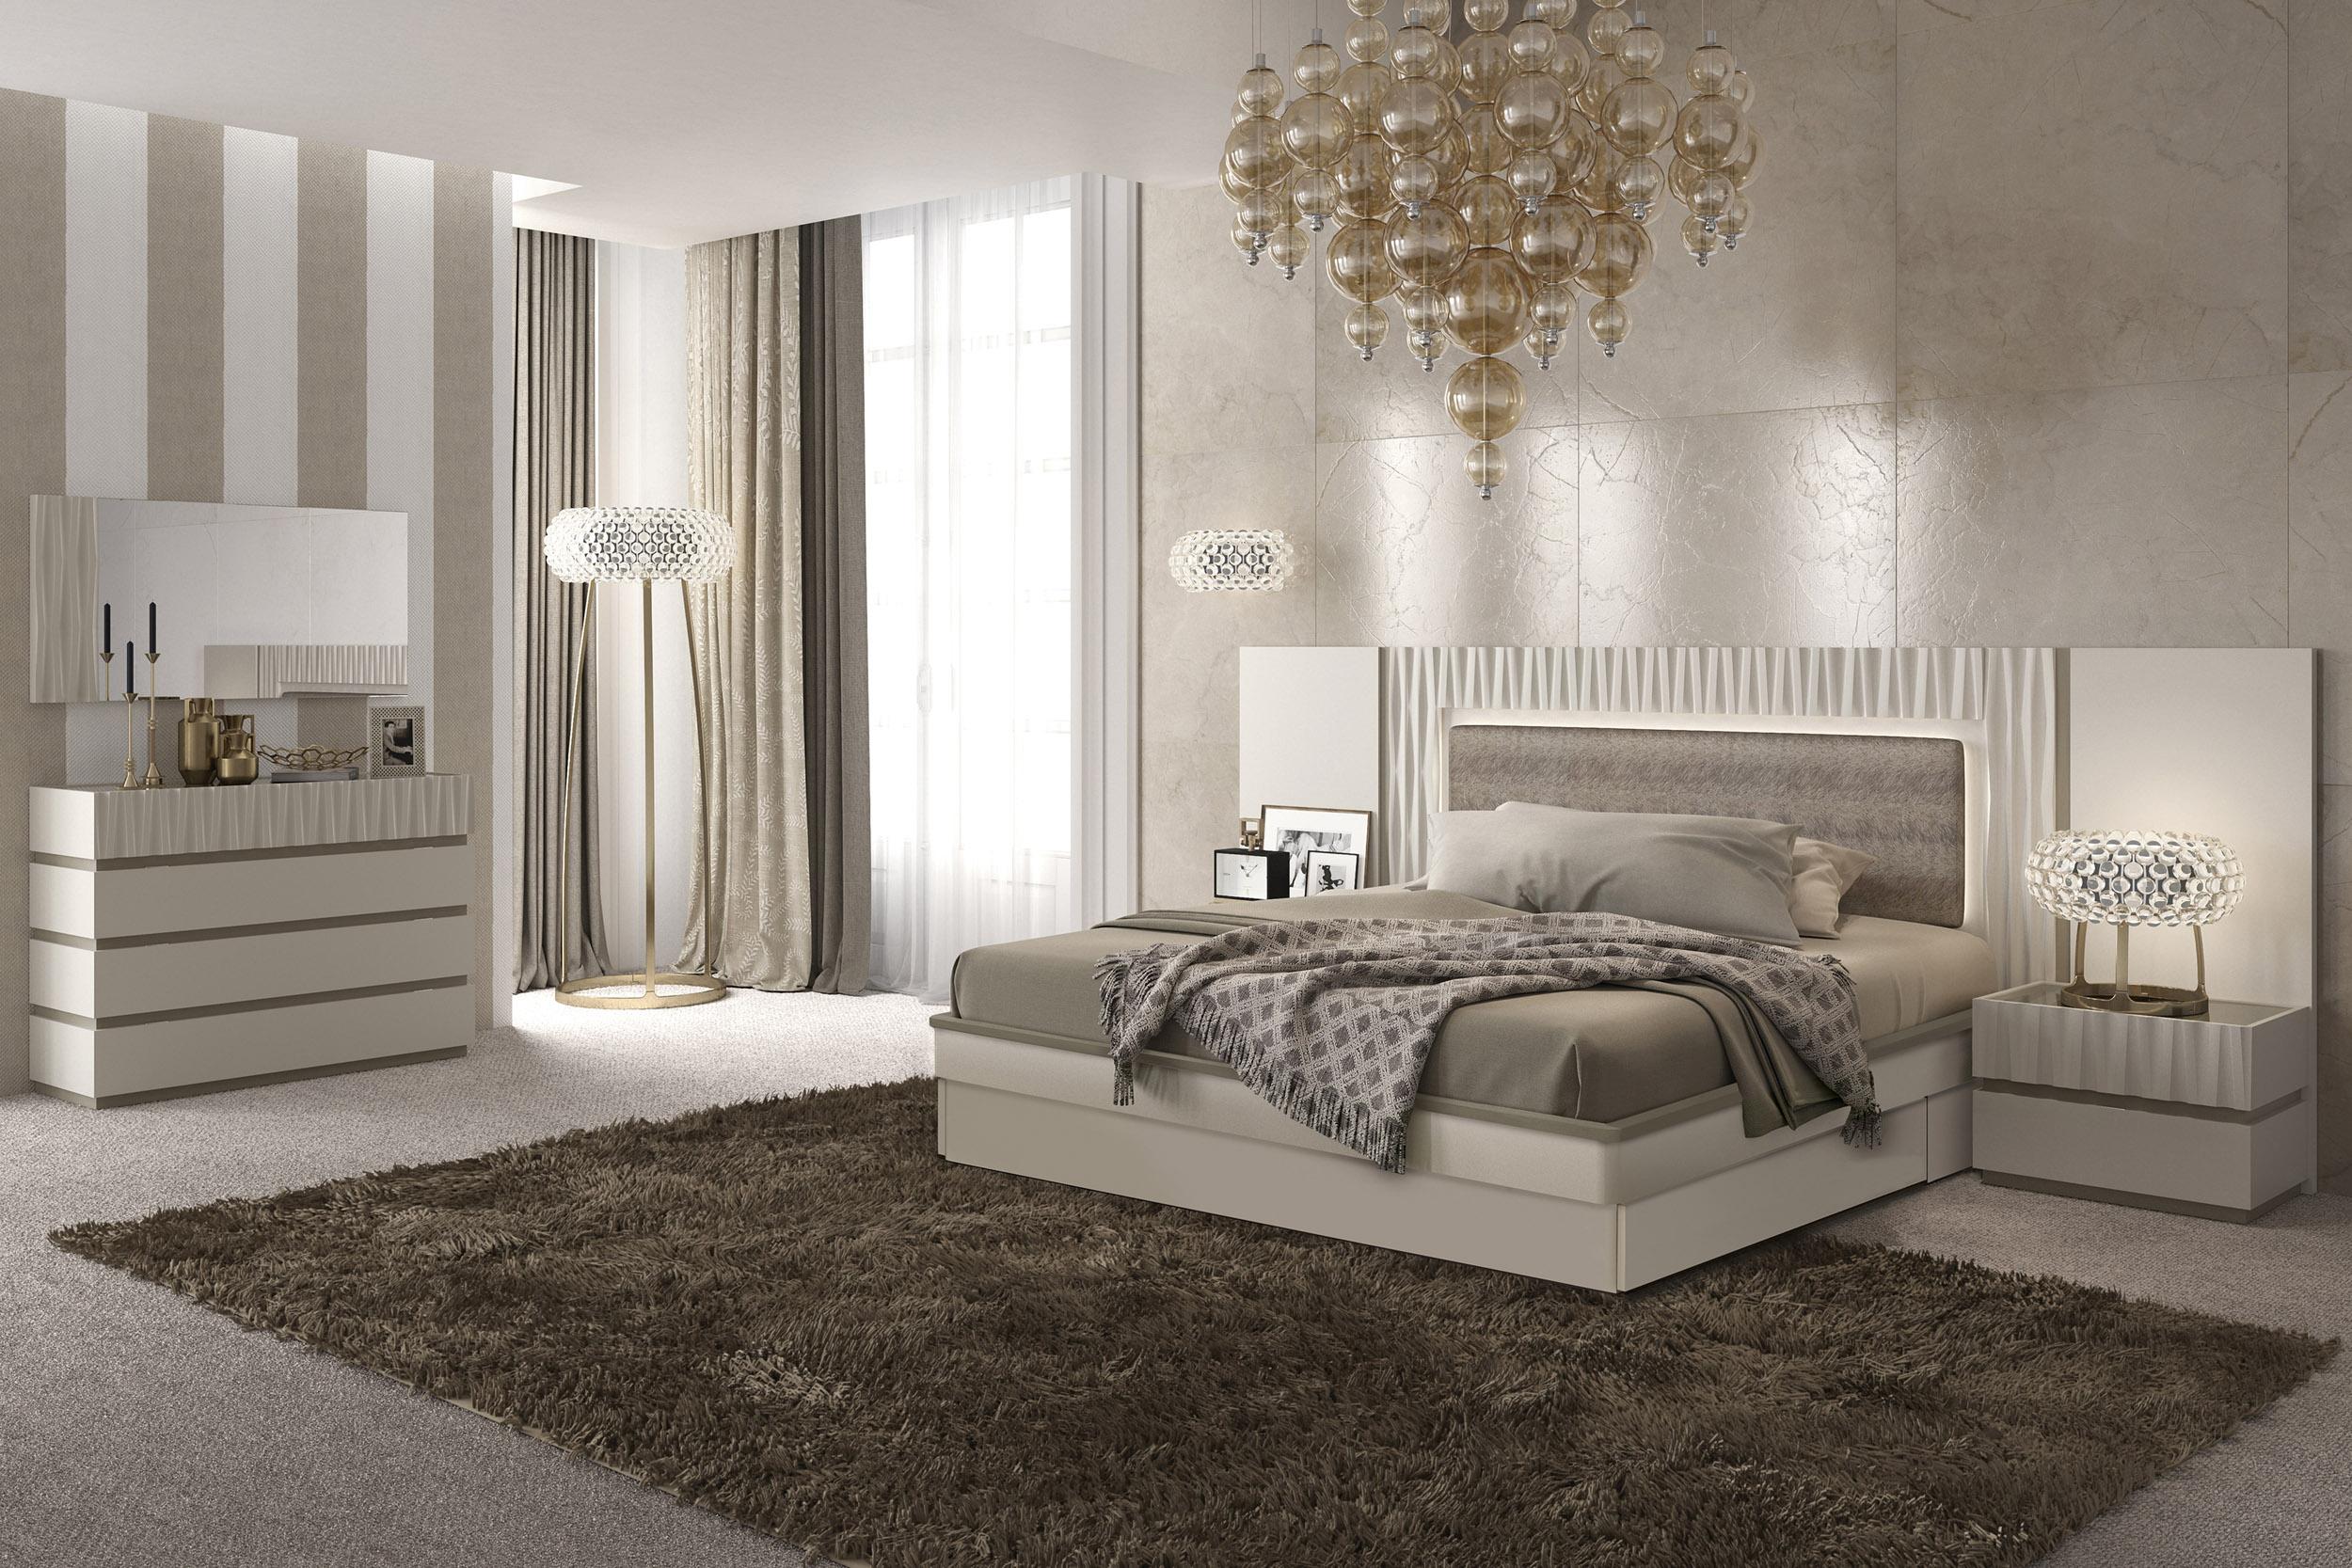 White Classic Look European Bedroom Suite Marina 01 